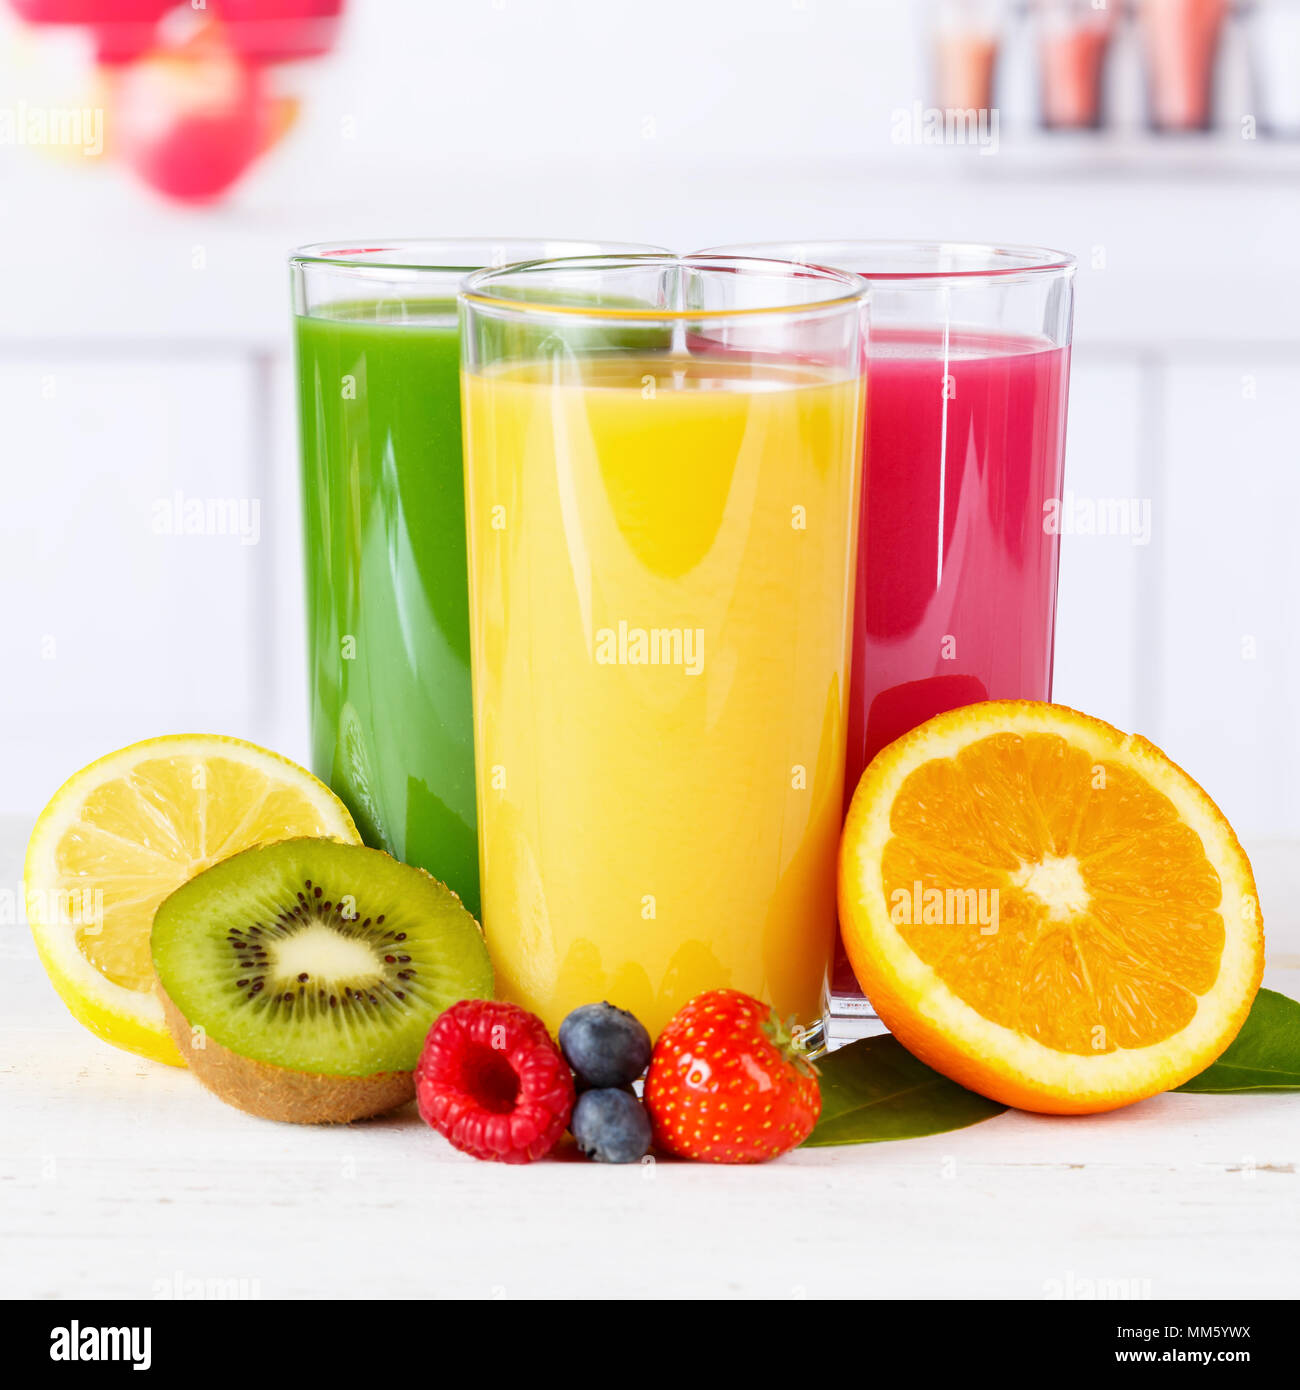 Juice smoothie smoothies orange oranges square fruit fruits fresh drink Stock Photo